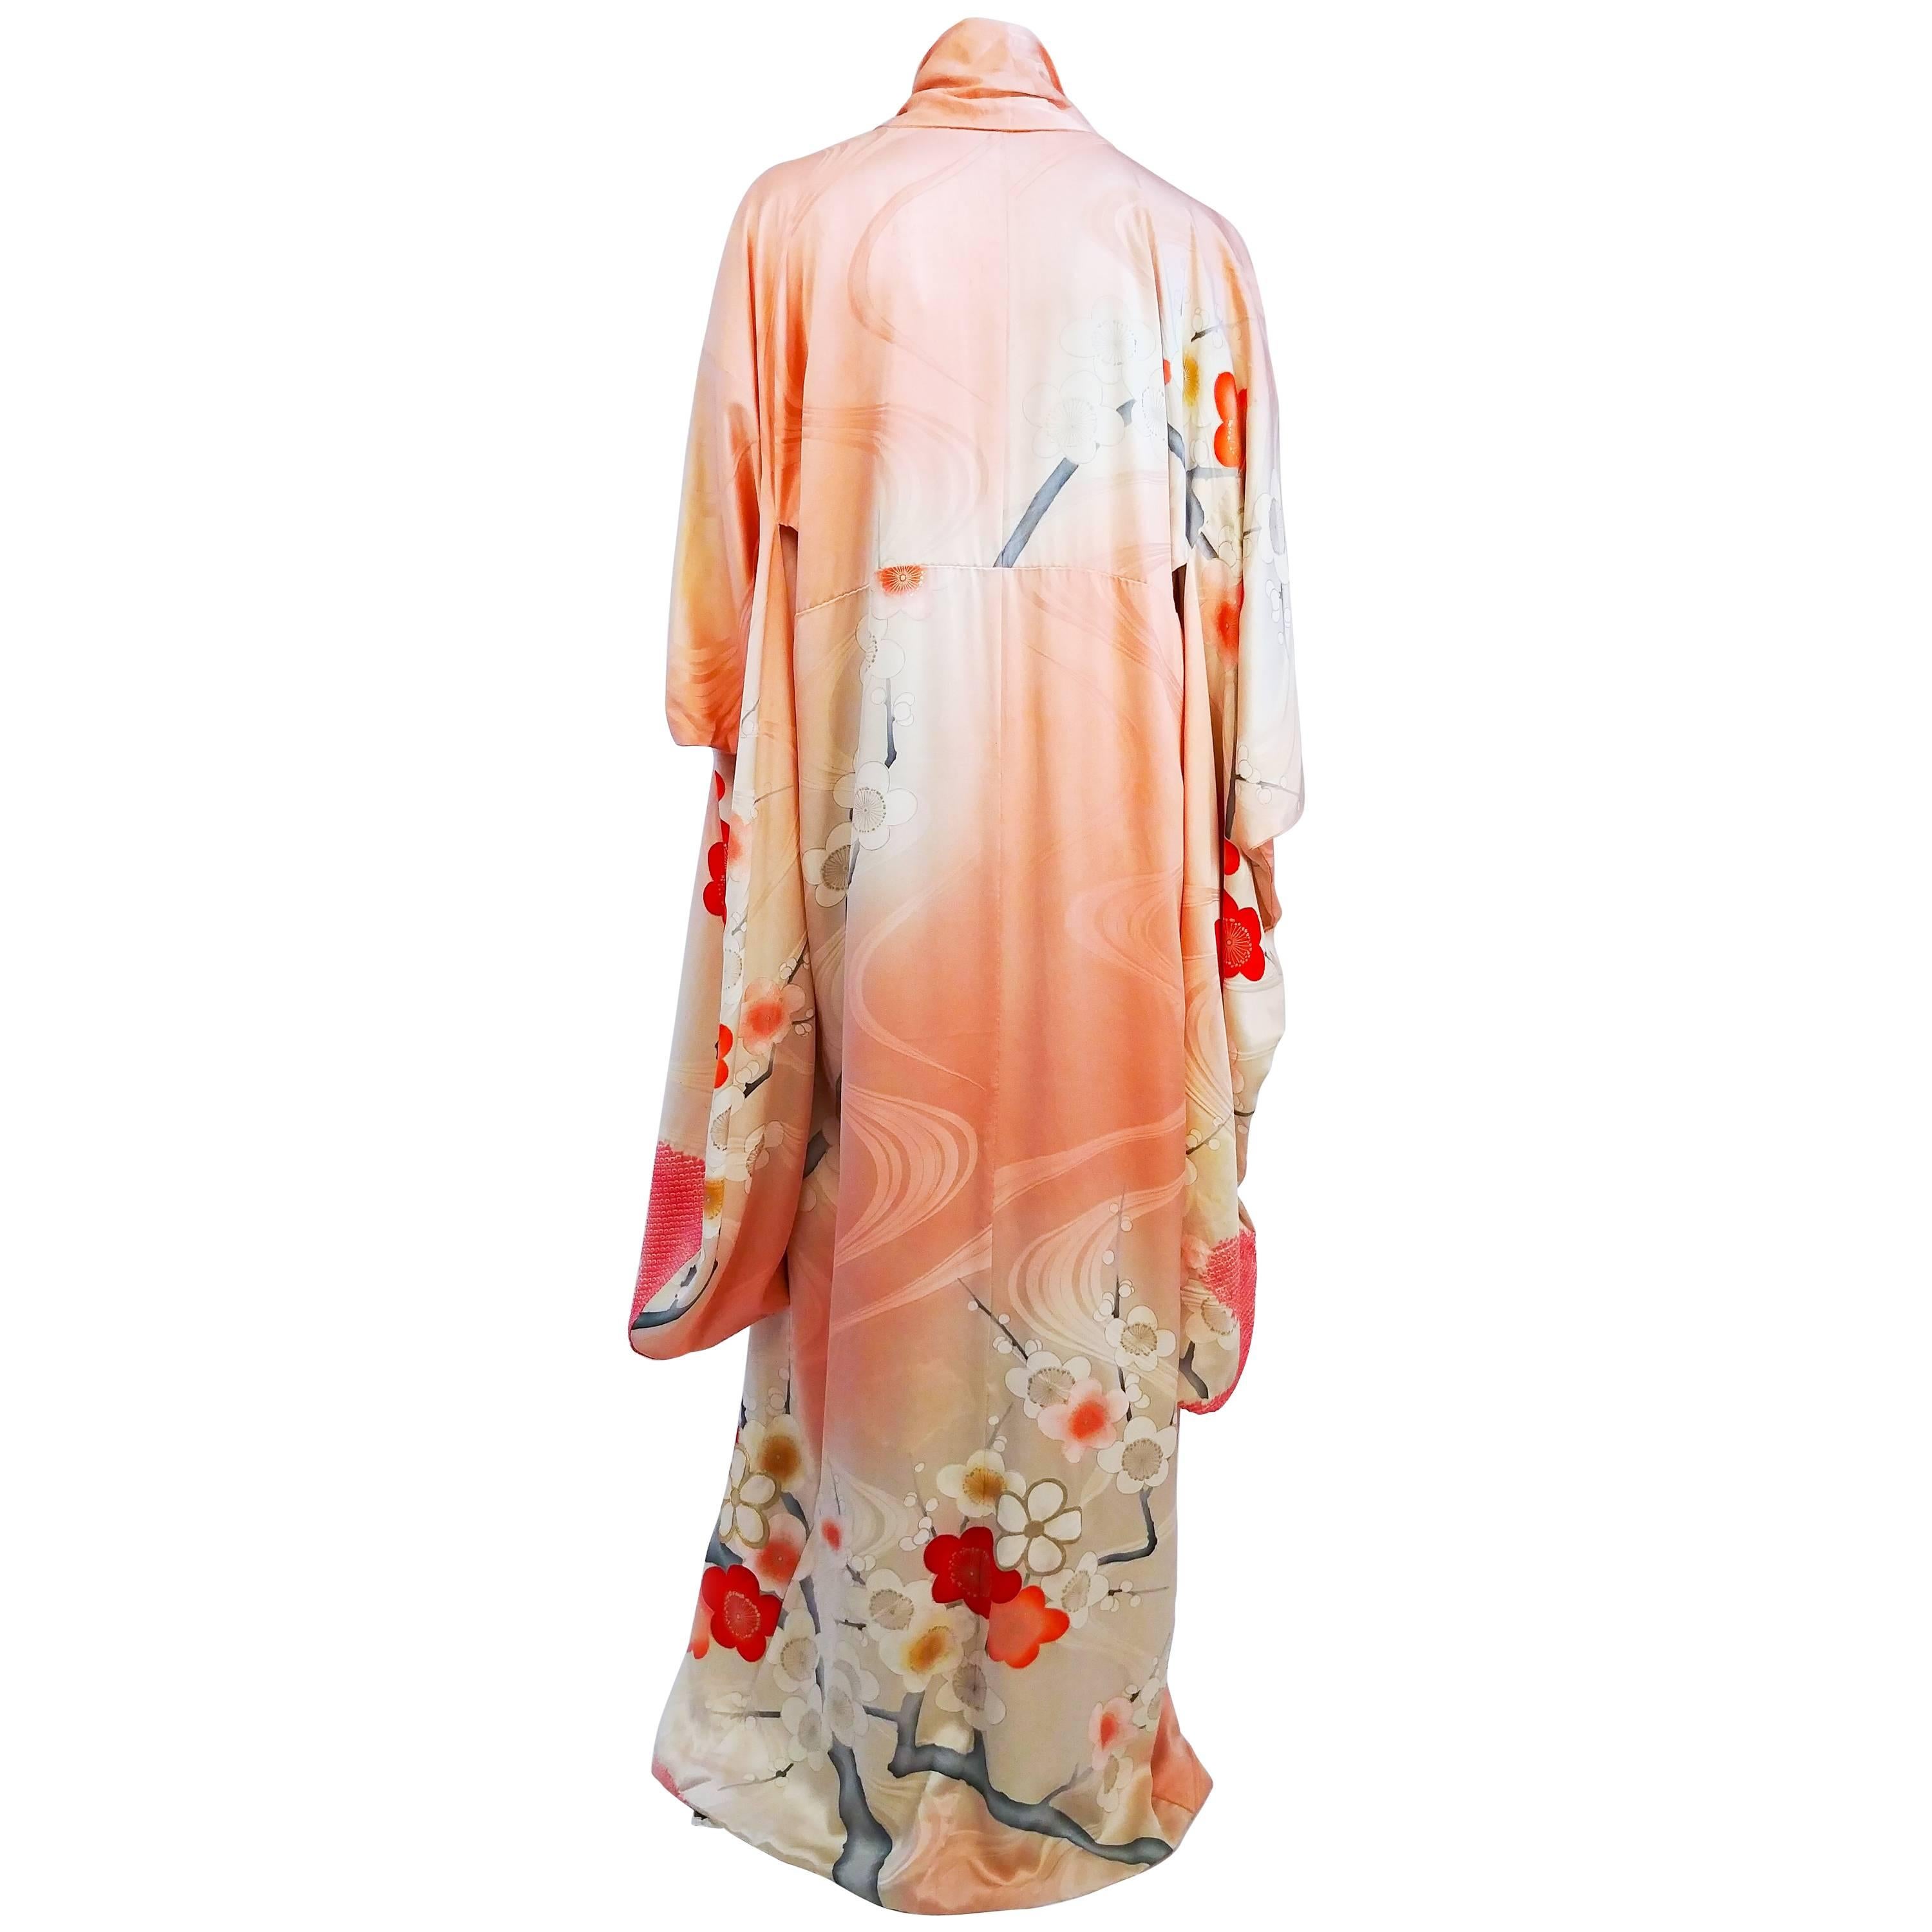 Coral Floral Motif Printed Silk Kimono